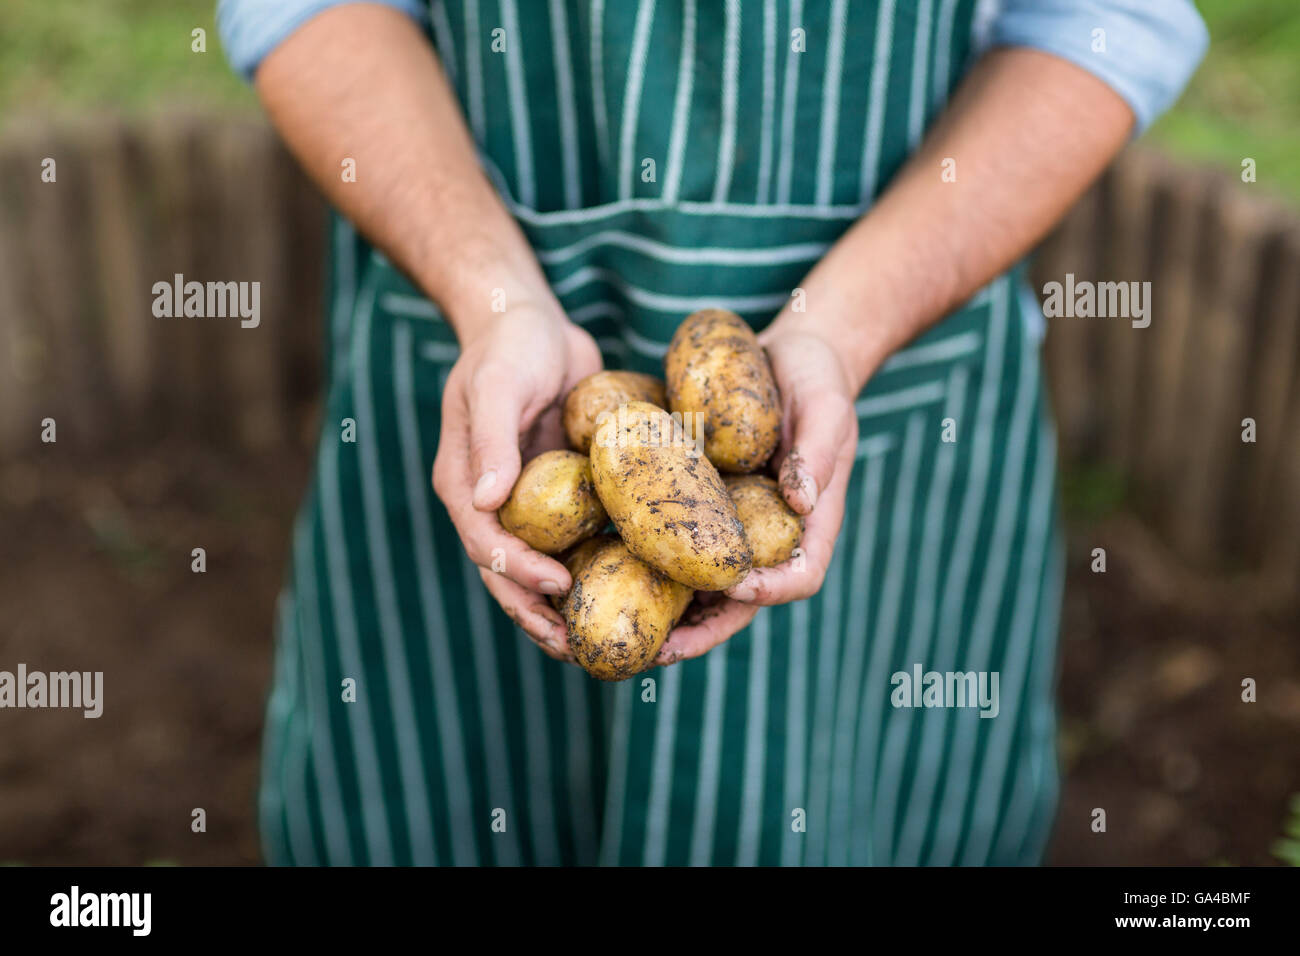 Male gardener holding harvested potatoes Stock Photo